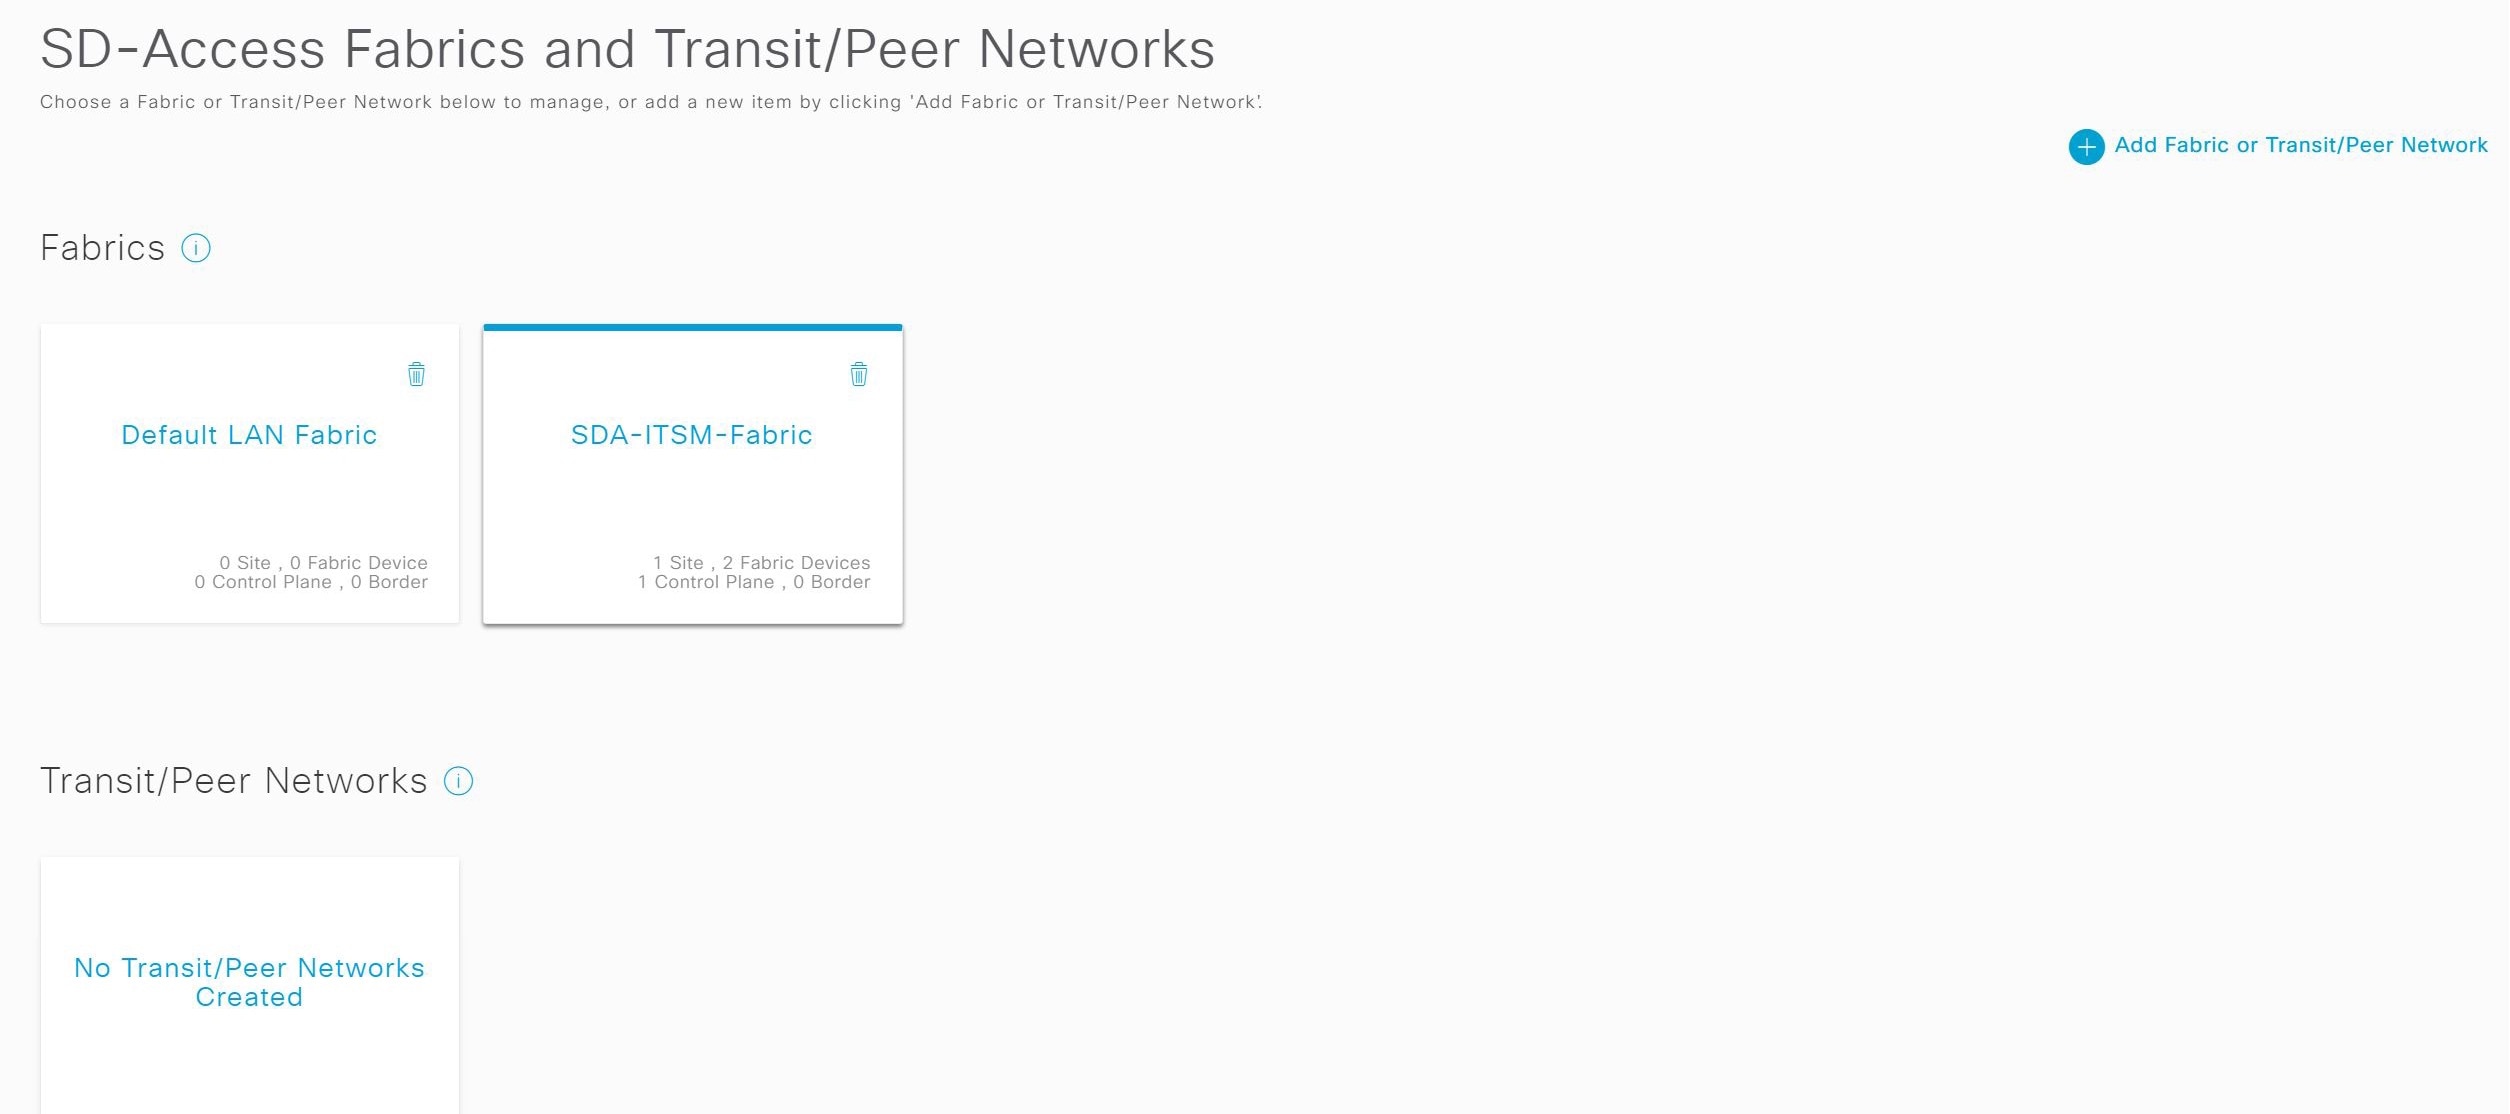 Figure 21: Fabrics and Transit/Peer Networks